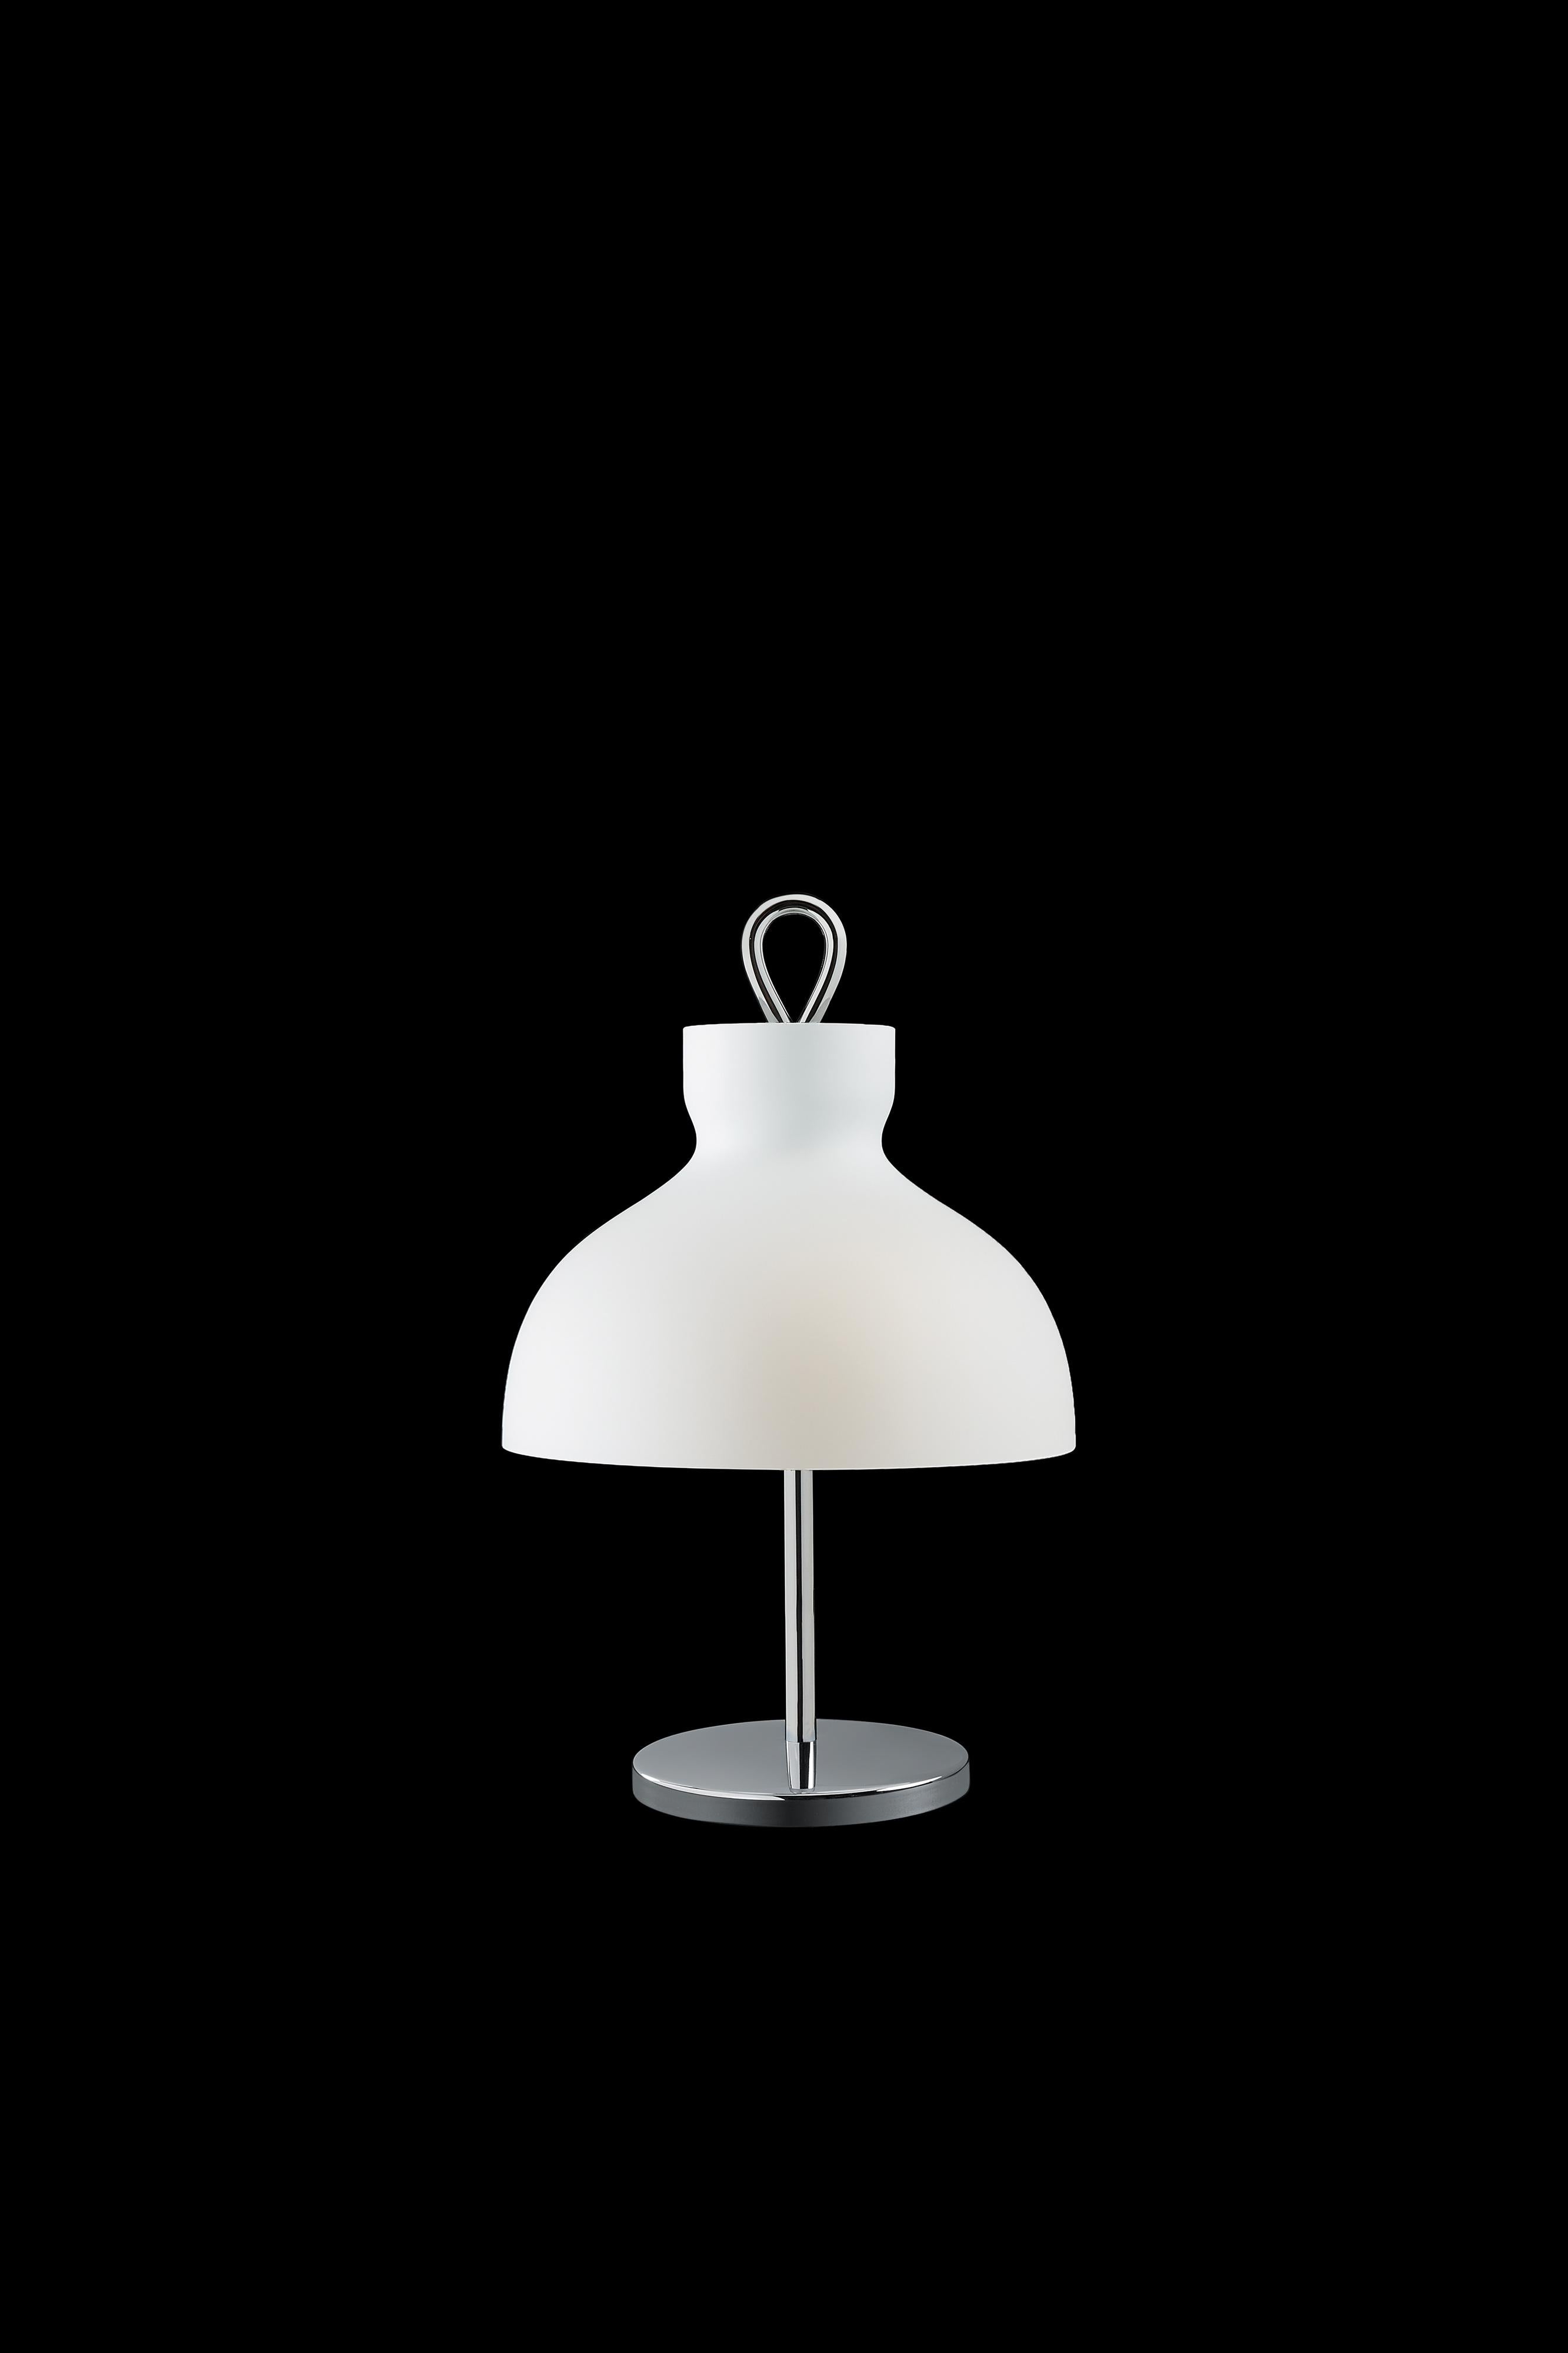 Ignazio Gardella 'Arenzano Bassa' Table Lamp in Glass and Satin Nickel In New Condition For Sale In Glendale, CA